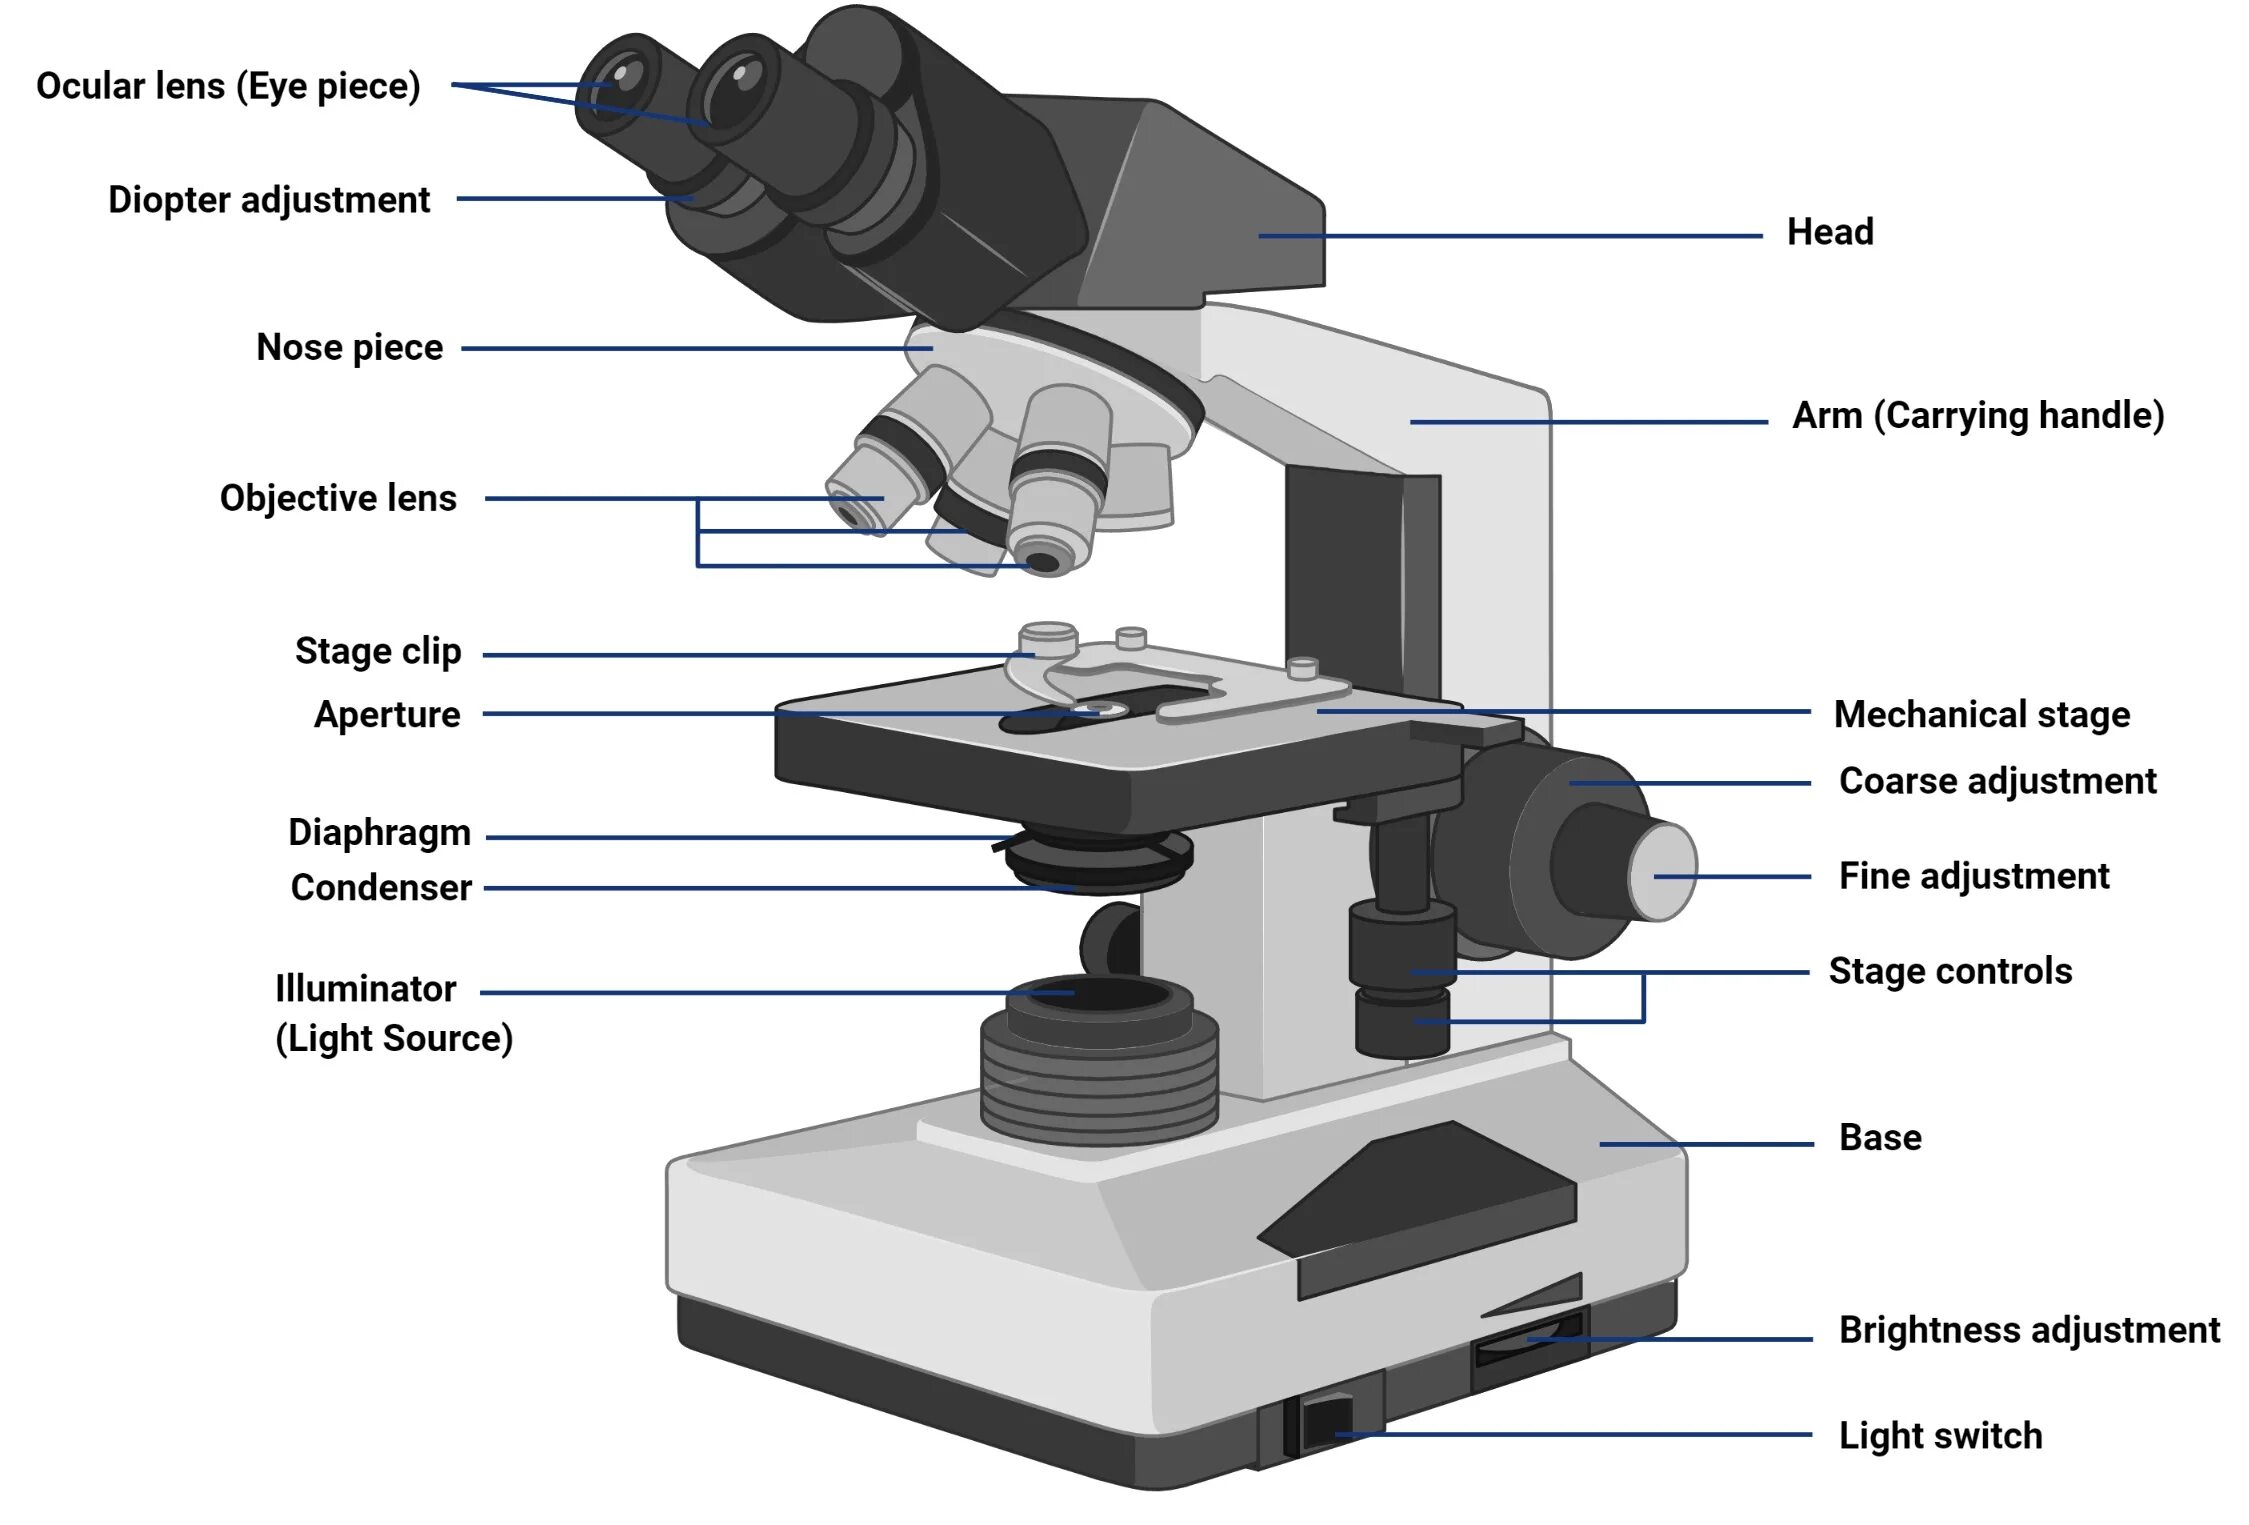 Микроскоп p5000i Digital Analysis Microscope. Микроскоп с2108. Строение микроскопа макровинт. Строение микроскопа Микмед.